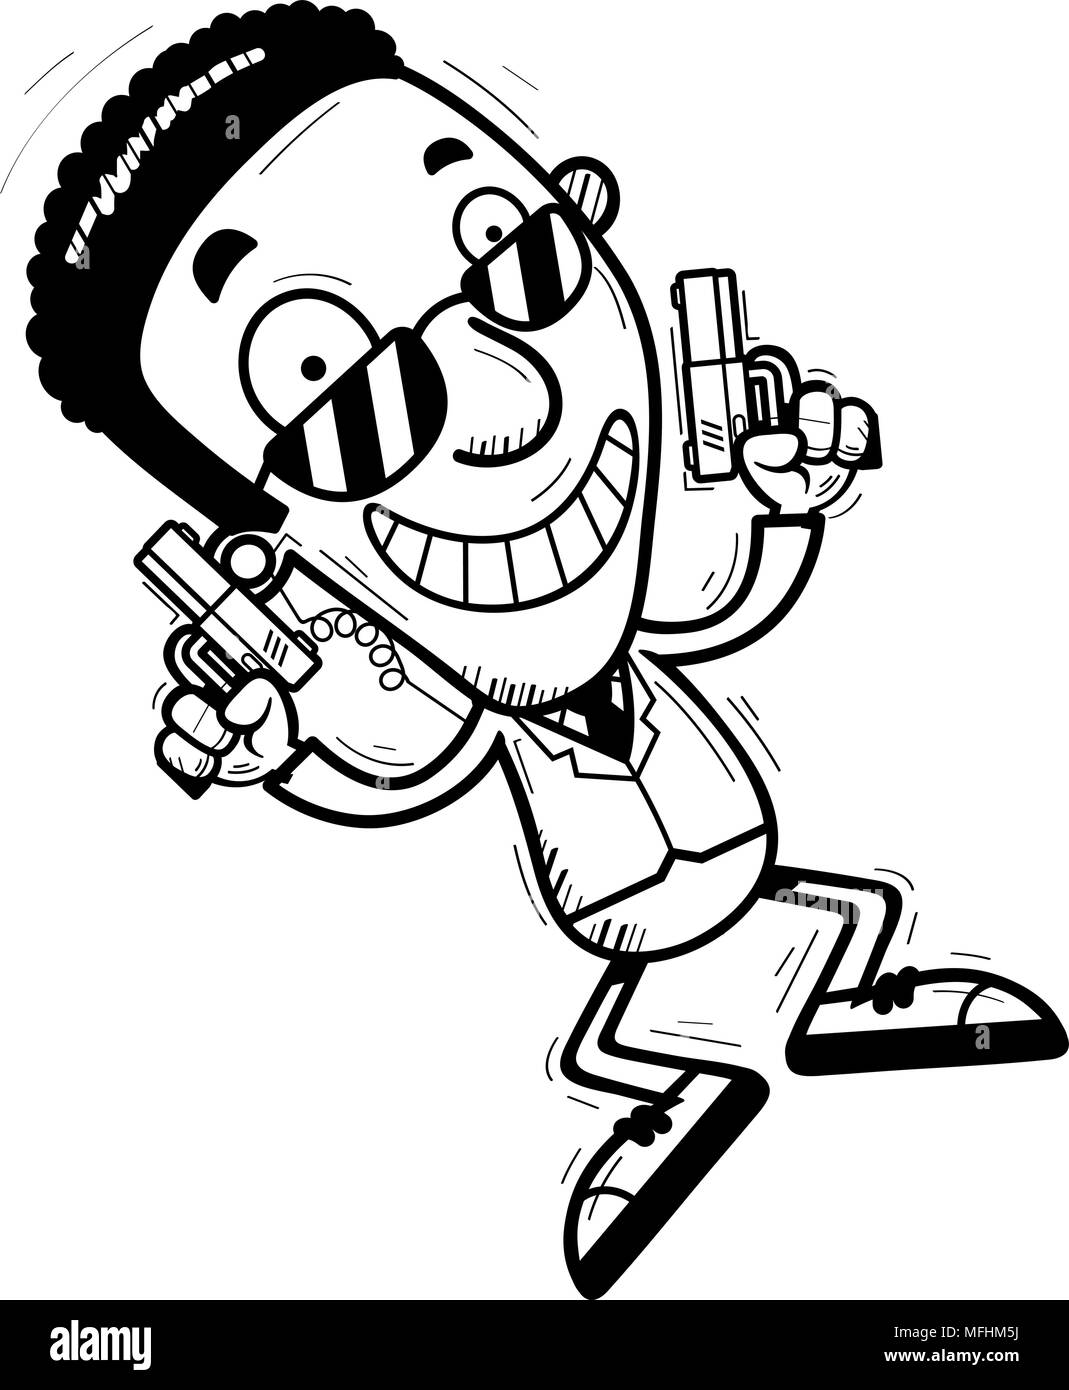 Ein Cartoon Illustration eines schwarzen Mannes Secret Service Agent springen. Stock Vektor